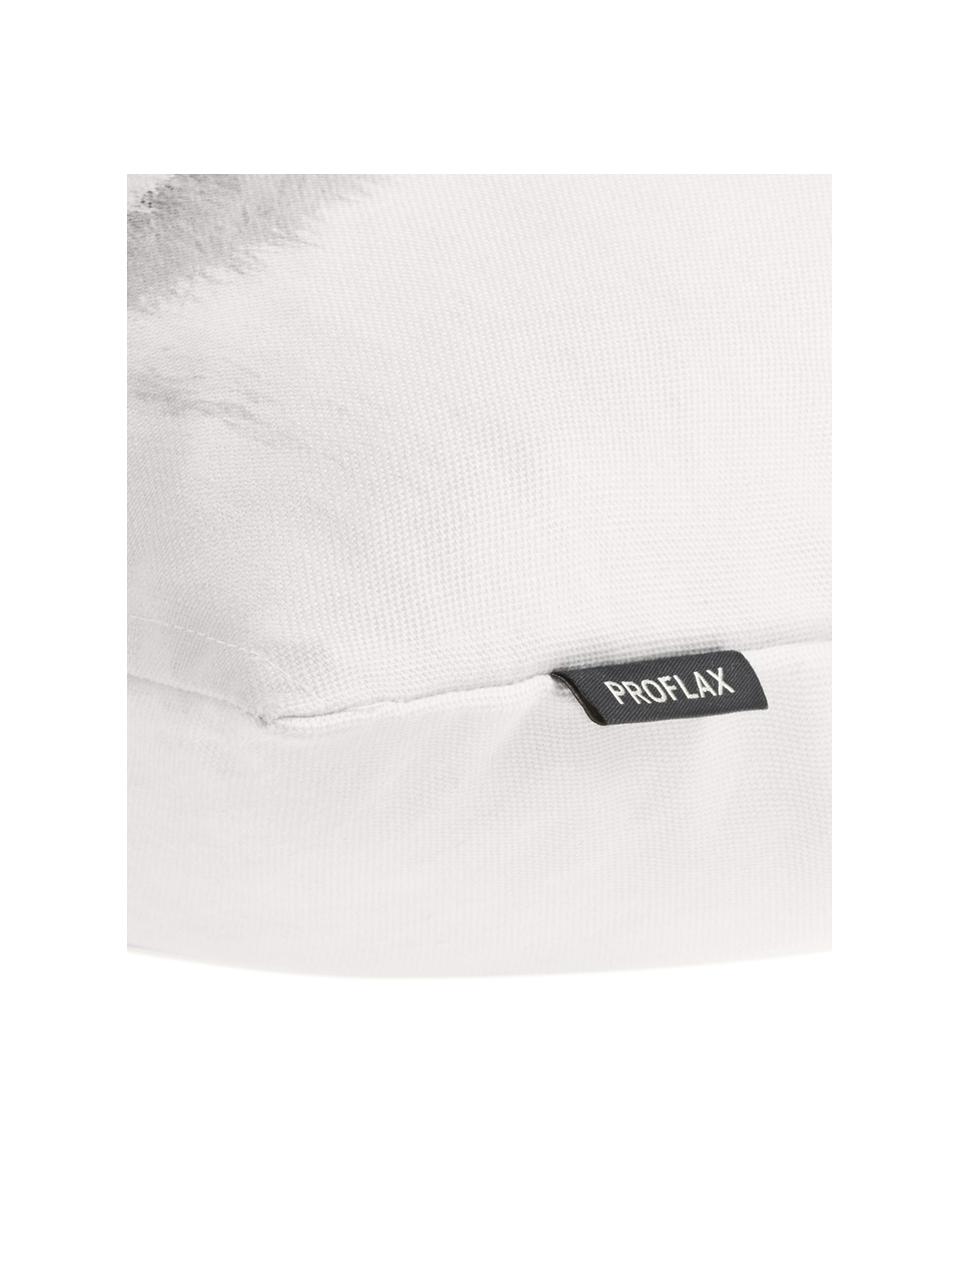 Poszewka na poduszkę Cool, Bawełna, Biały, odcienie szarego, S 40 x D 60 cm